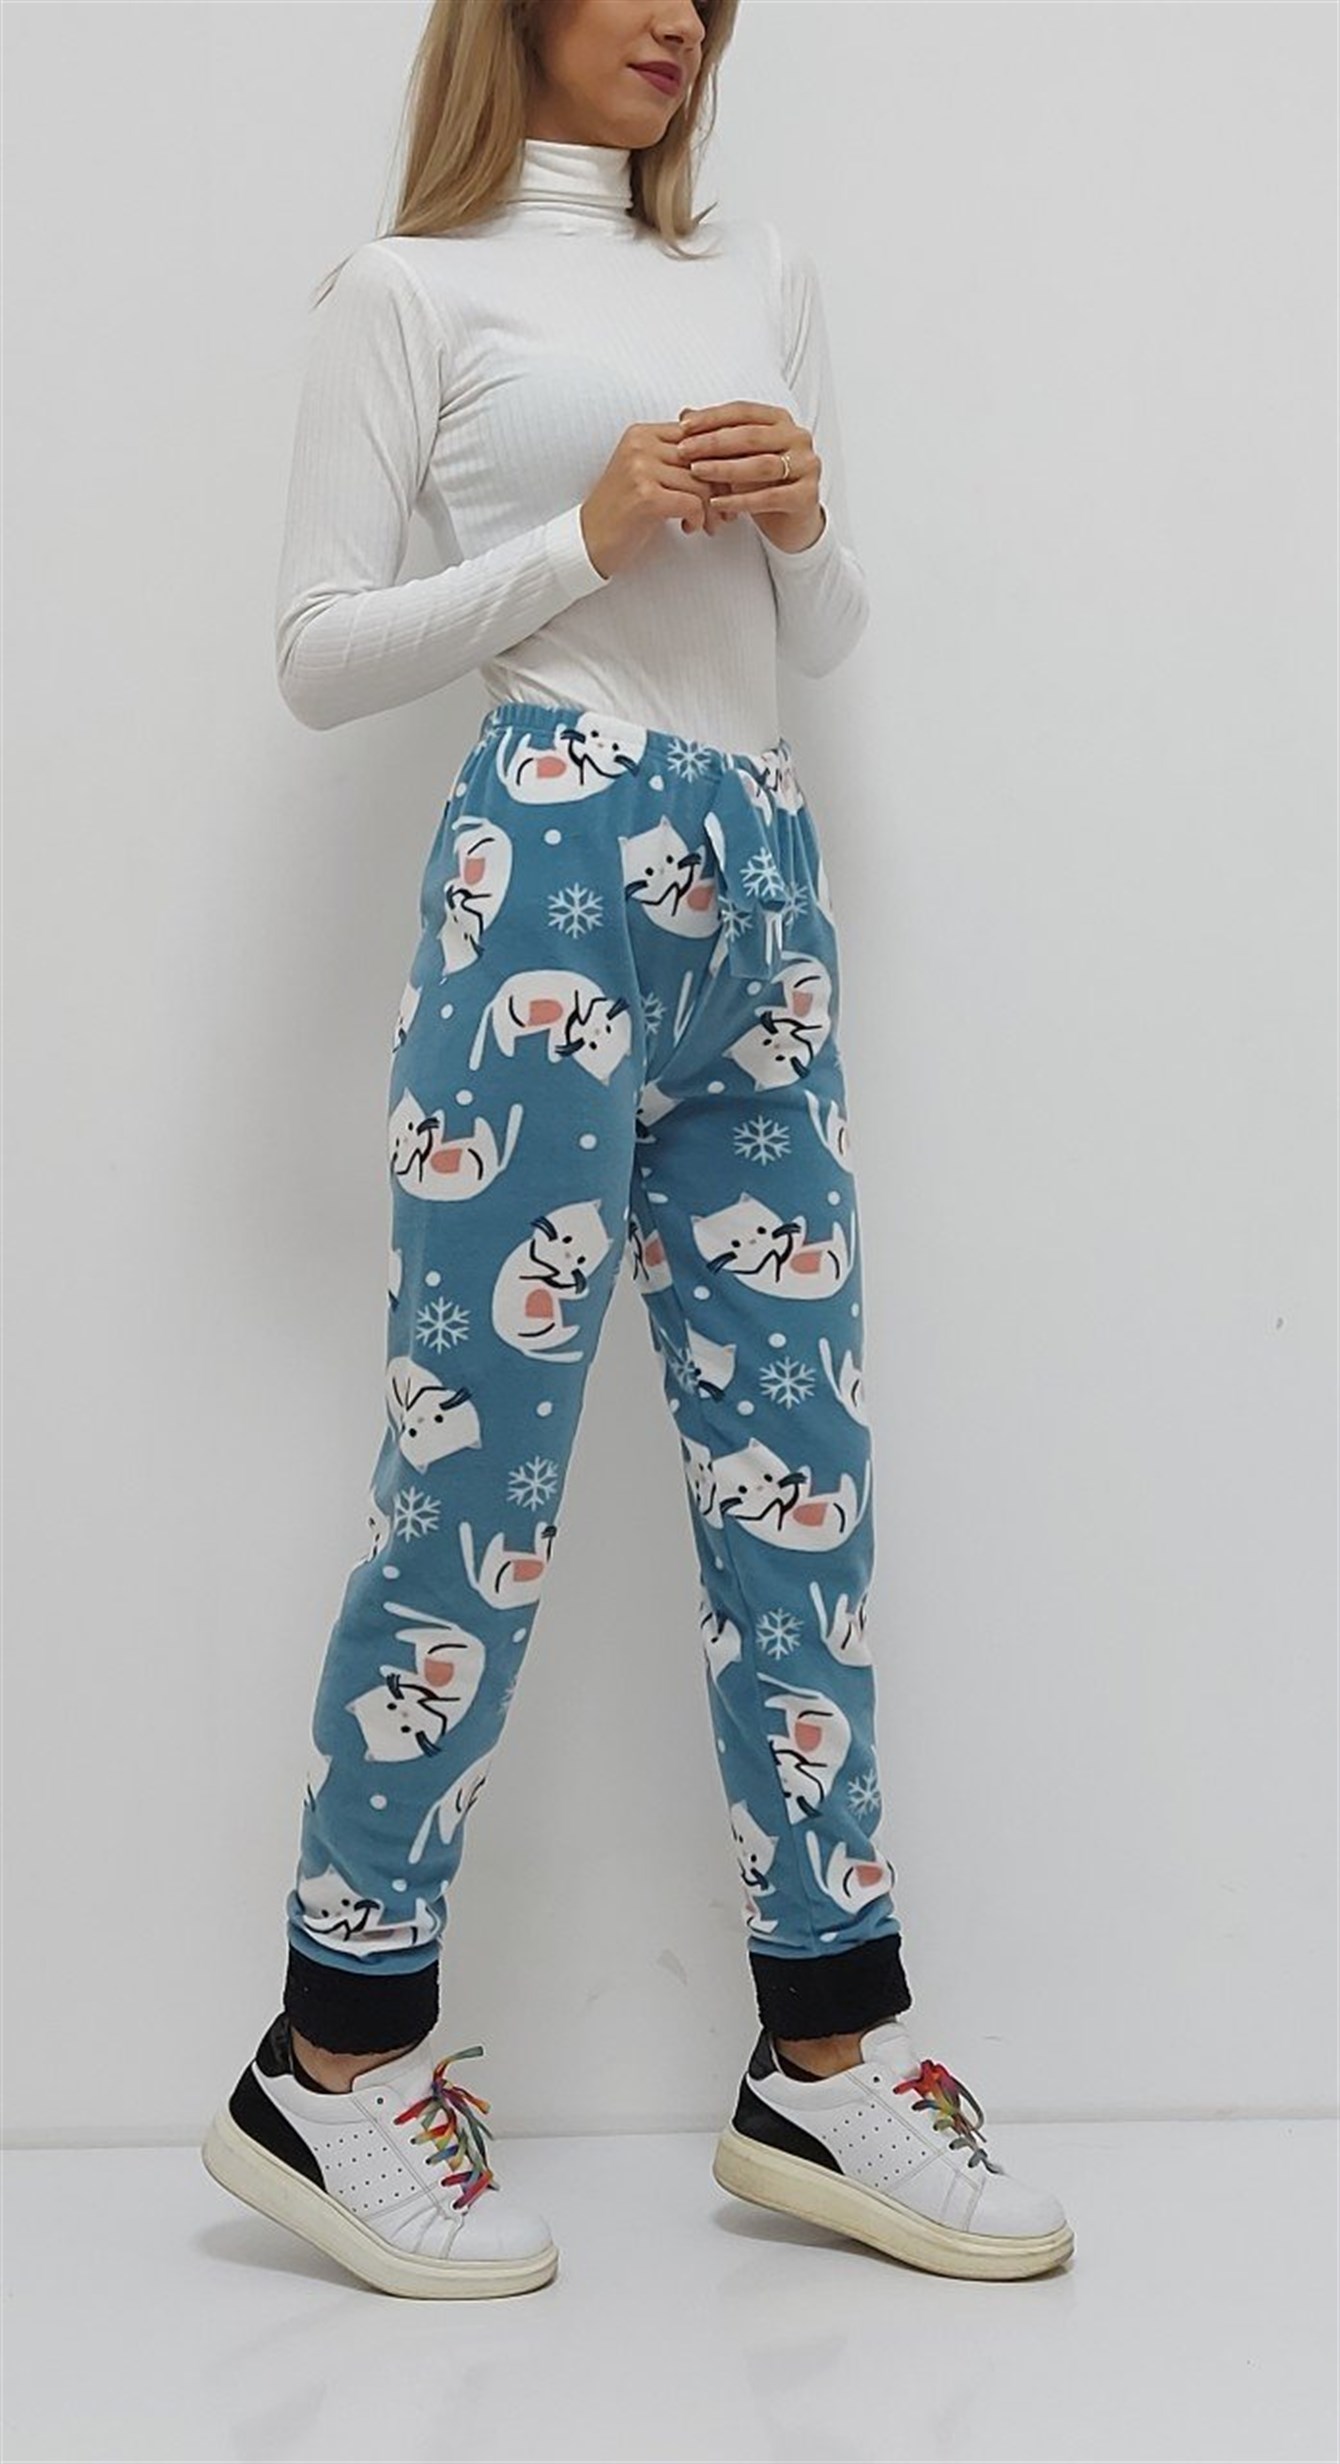 Kedi Desenli Paçası Polar Pijama Altı Mavi